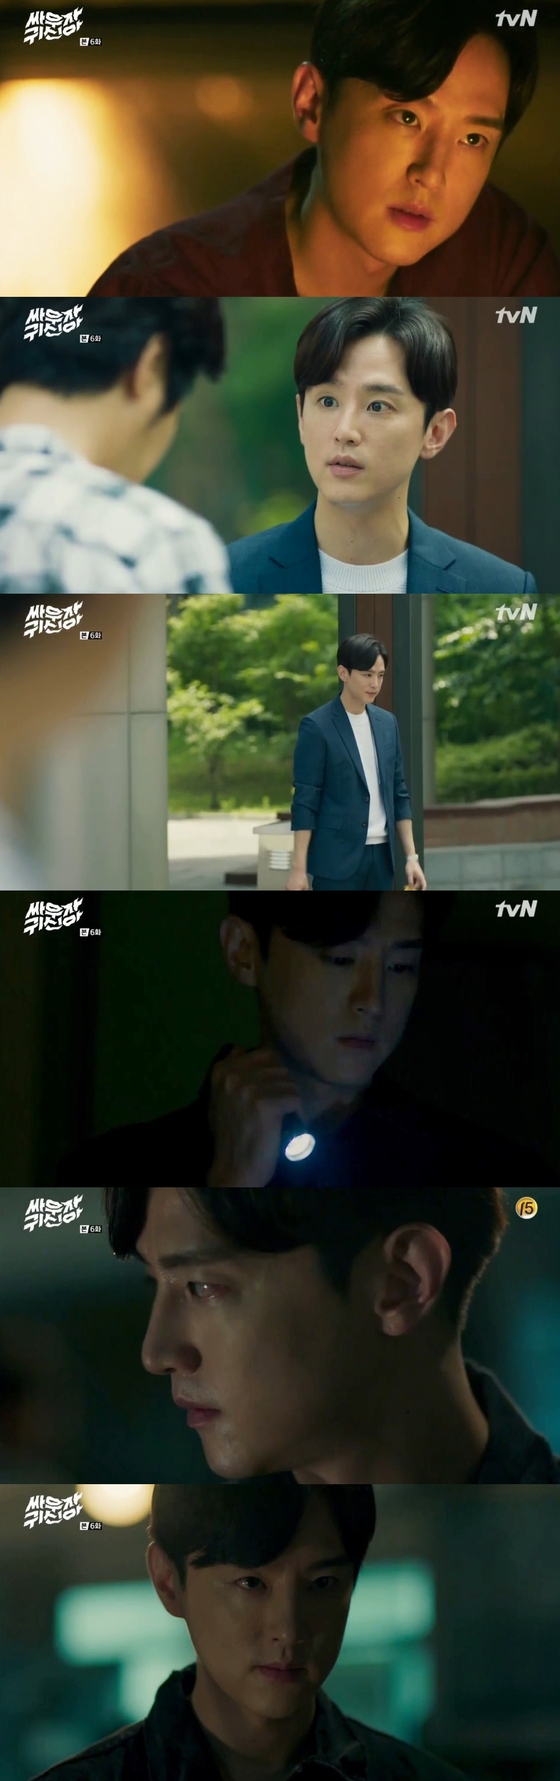 배우 권율이 '싸우자 귀신아'에 출연 중이다. © News1star/ tvN '싸우자 귀신아' 캡처